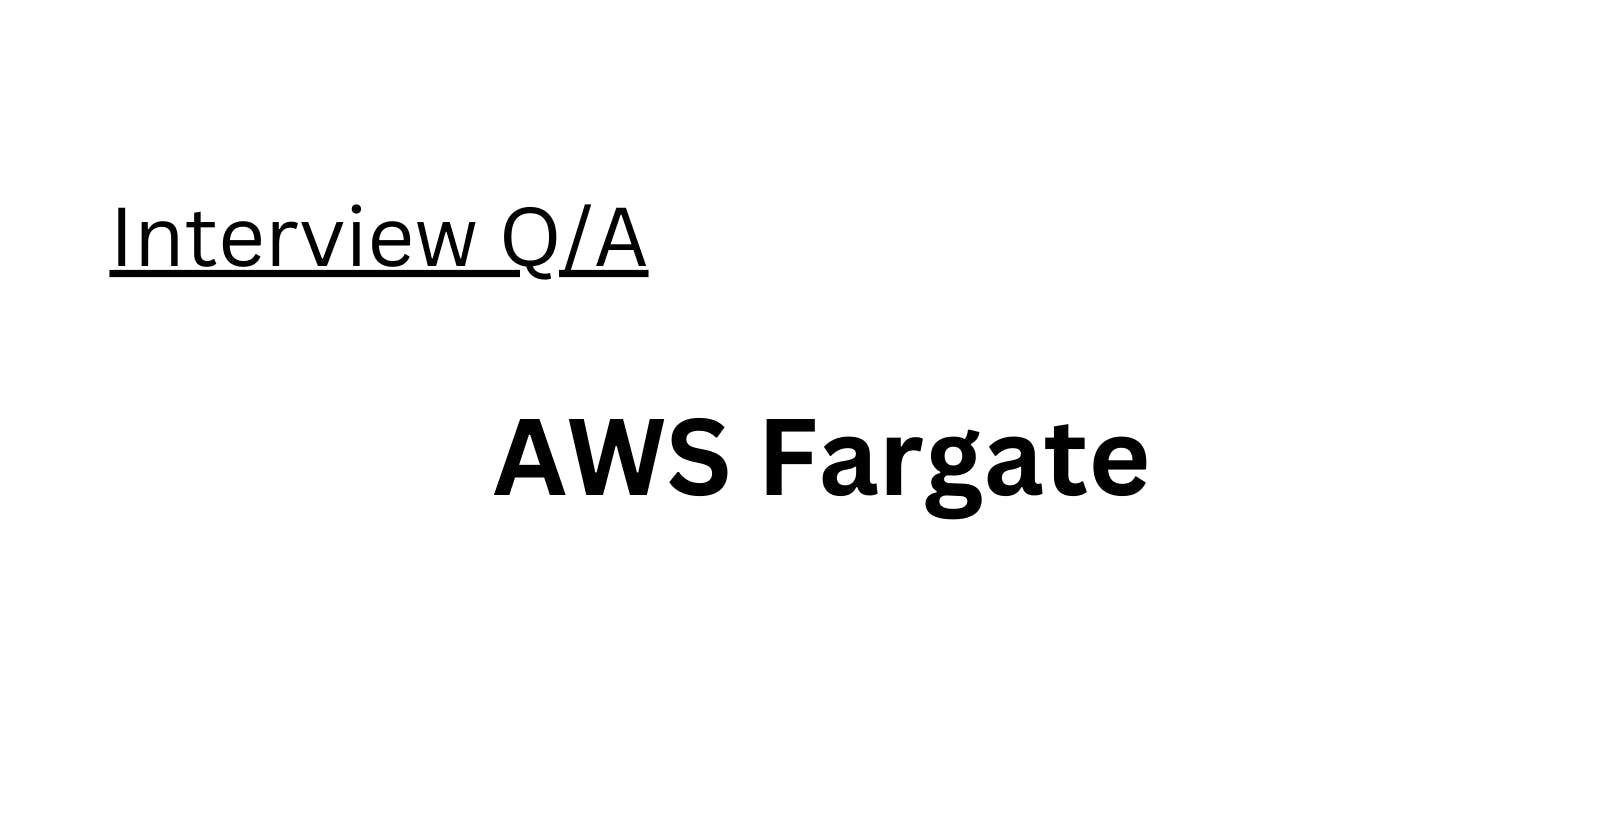 AWS Fargate Interview Q/A